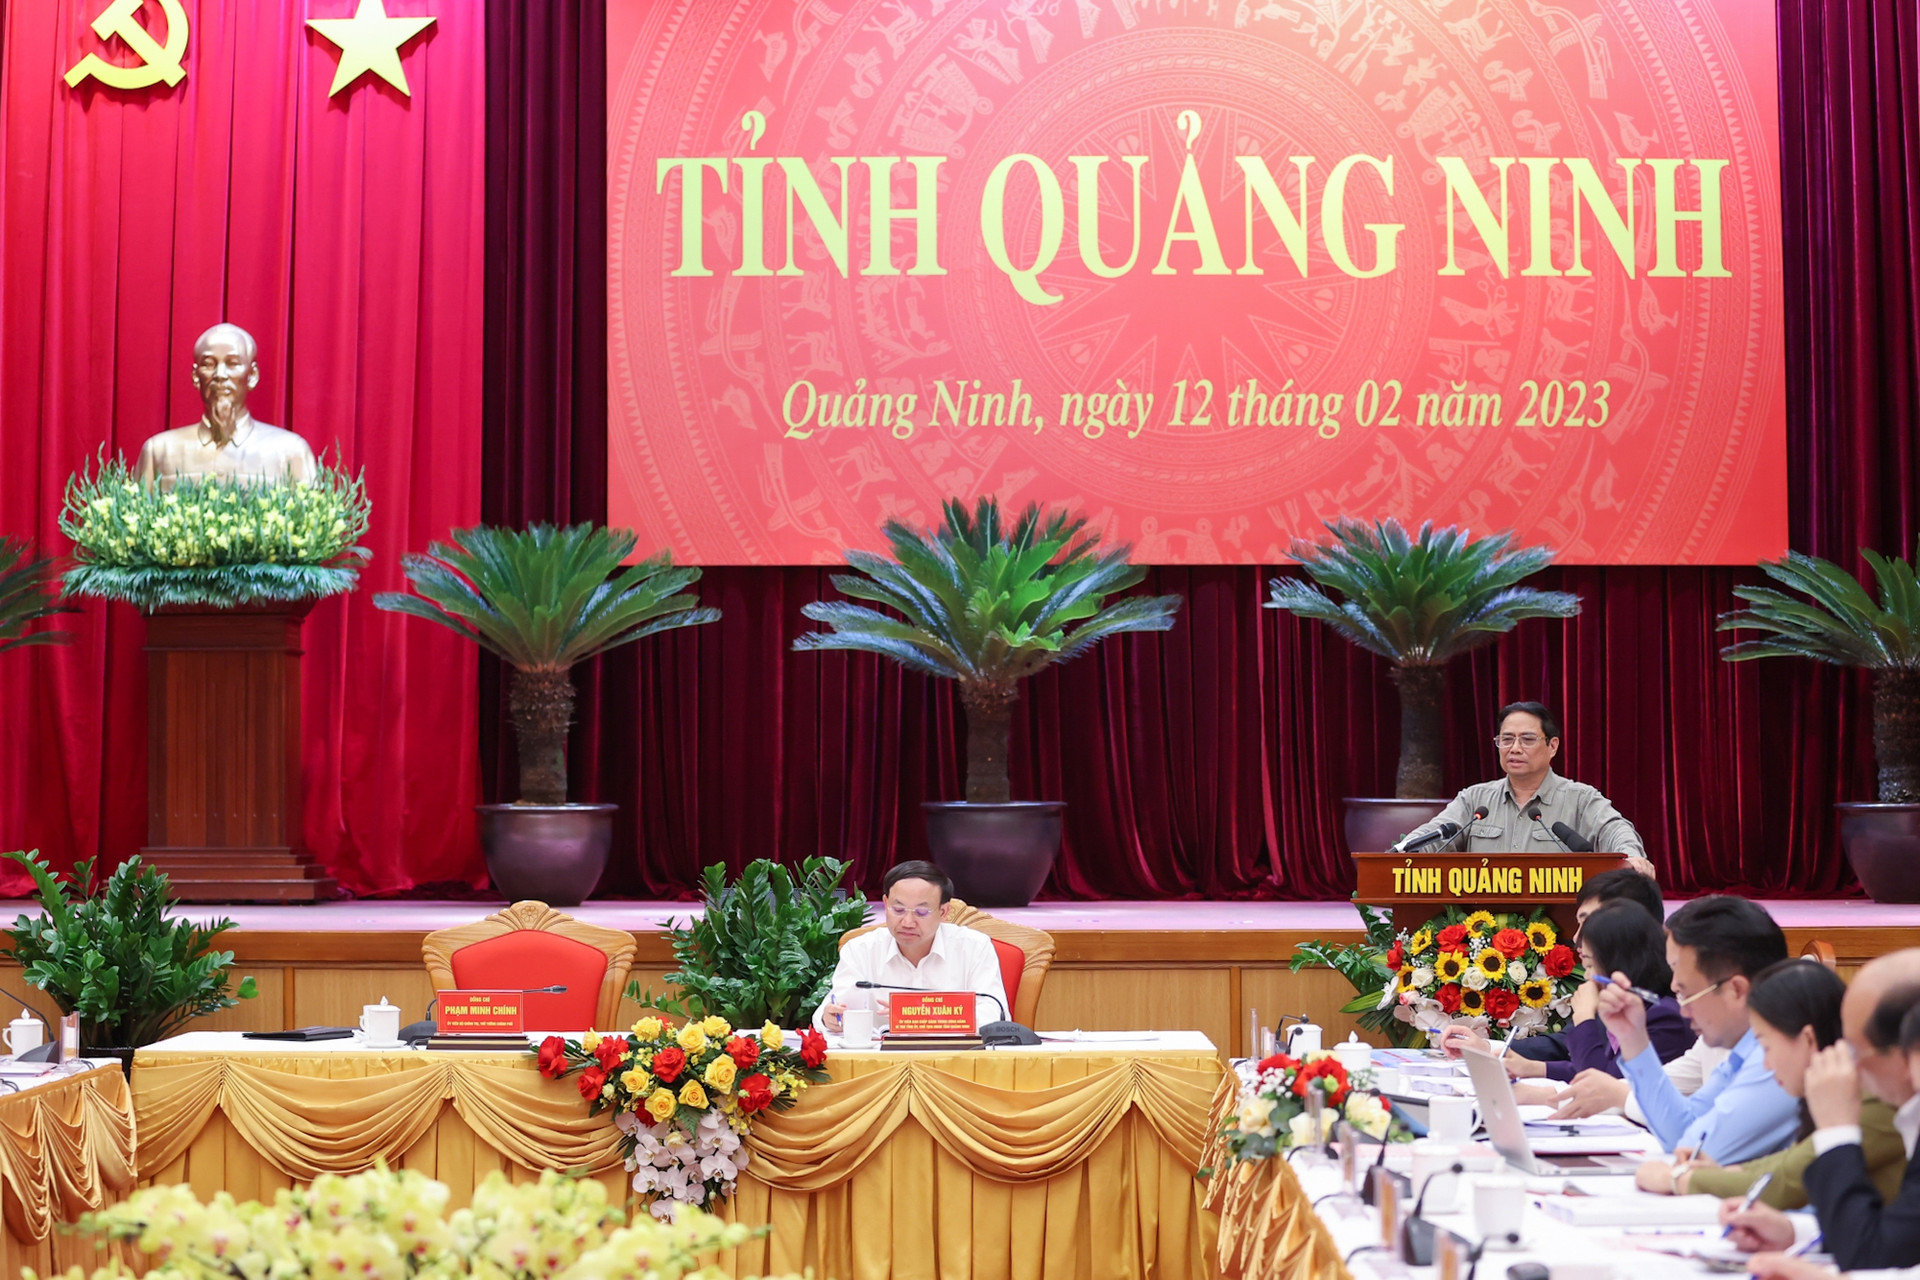 Thủ tướng: Quảng Ninh phải vươn lên tầm cao mới, phát triển giàu có và sạch đẹp - Ảnh 1.